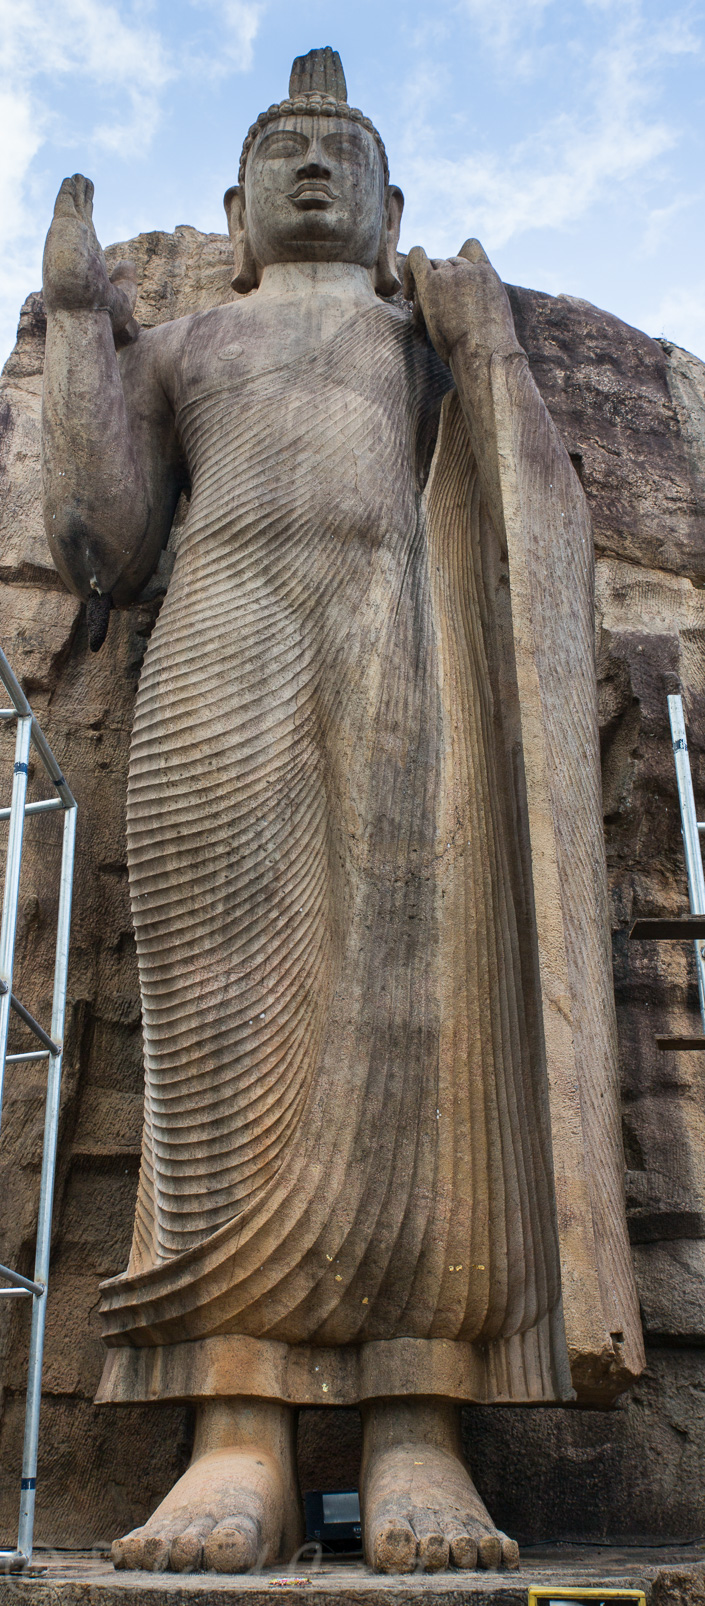 A Avukana, le bouddha du Soleil-Levant. La main droite est levée en signe de bénédiction. Son chignon avec une flamme est typique du style cingalais.